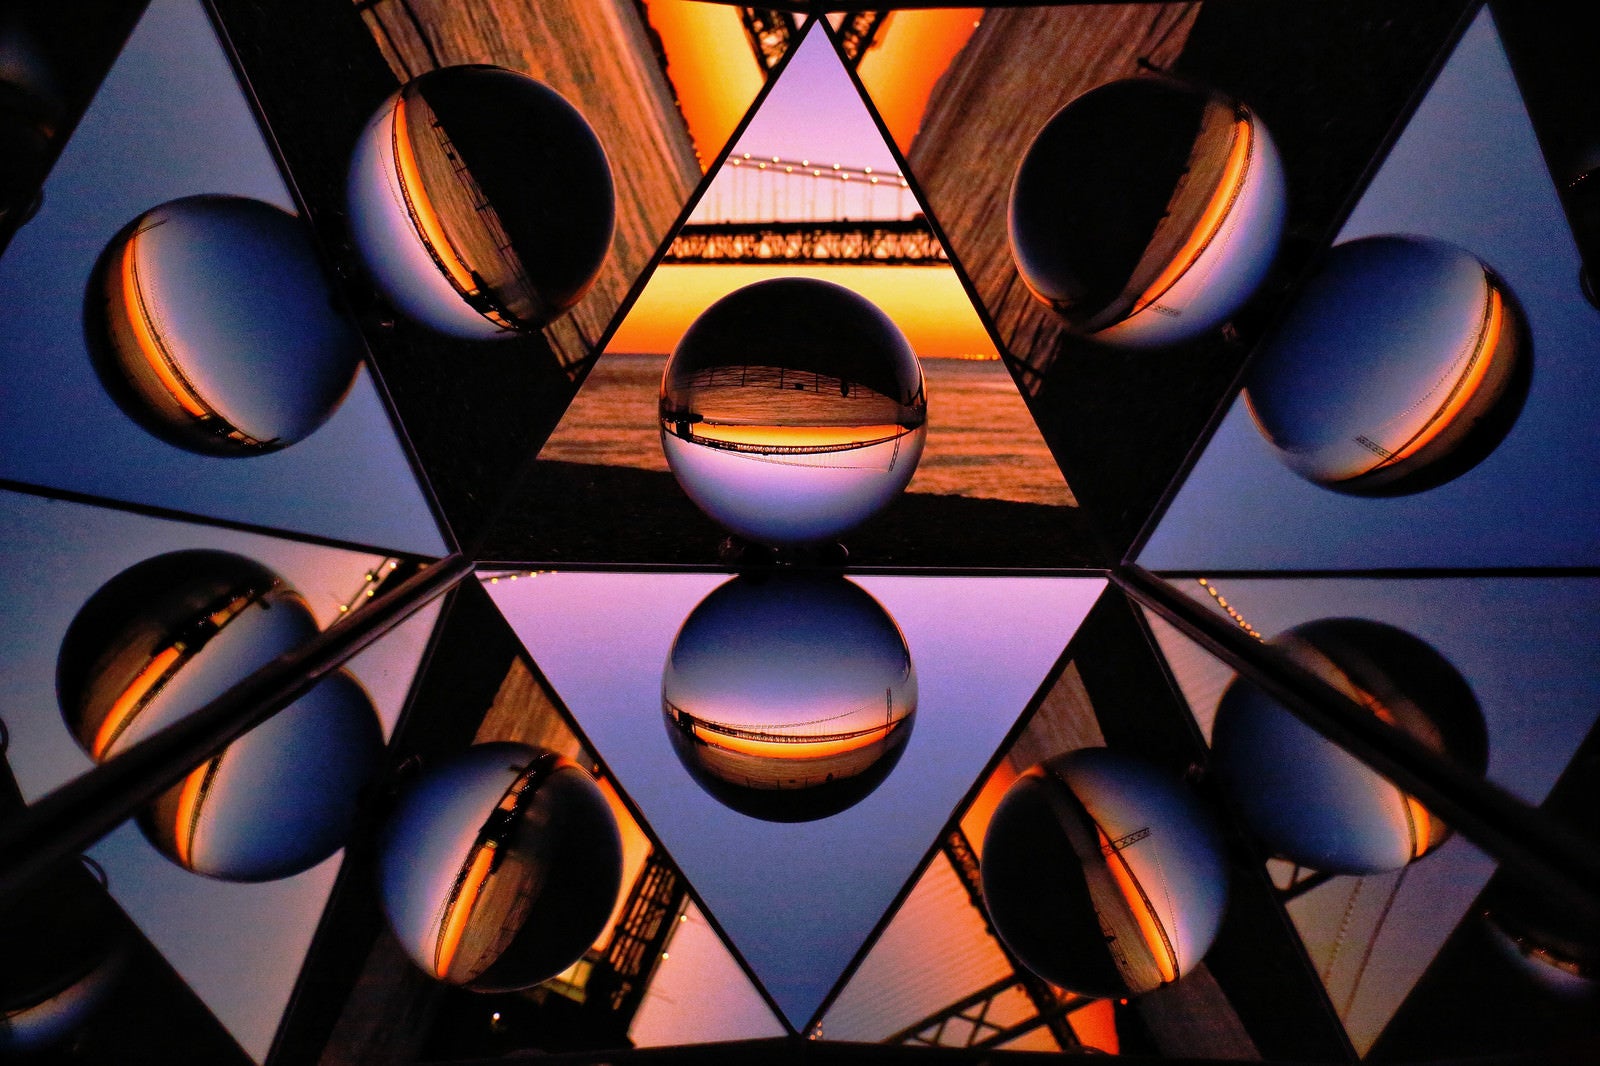 「夕焼けを映した反射鏡とガラス玉の万華鏡」の写真